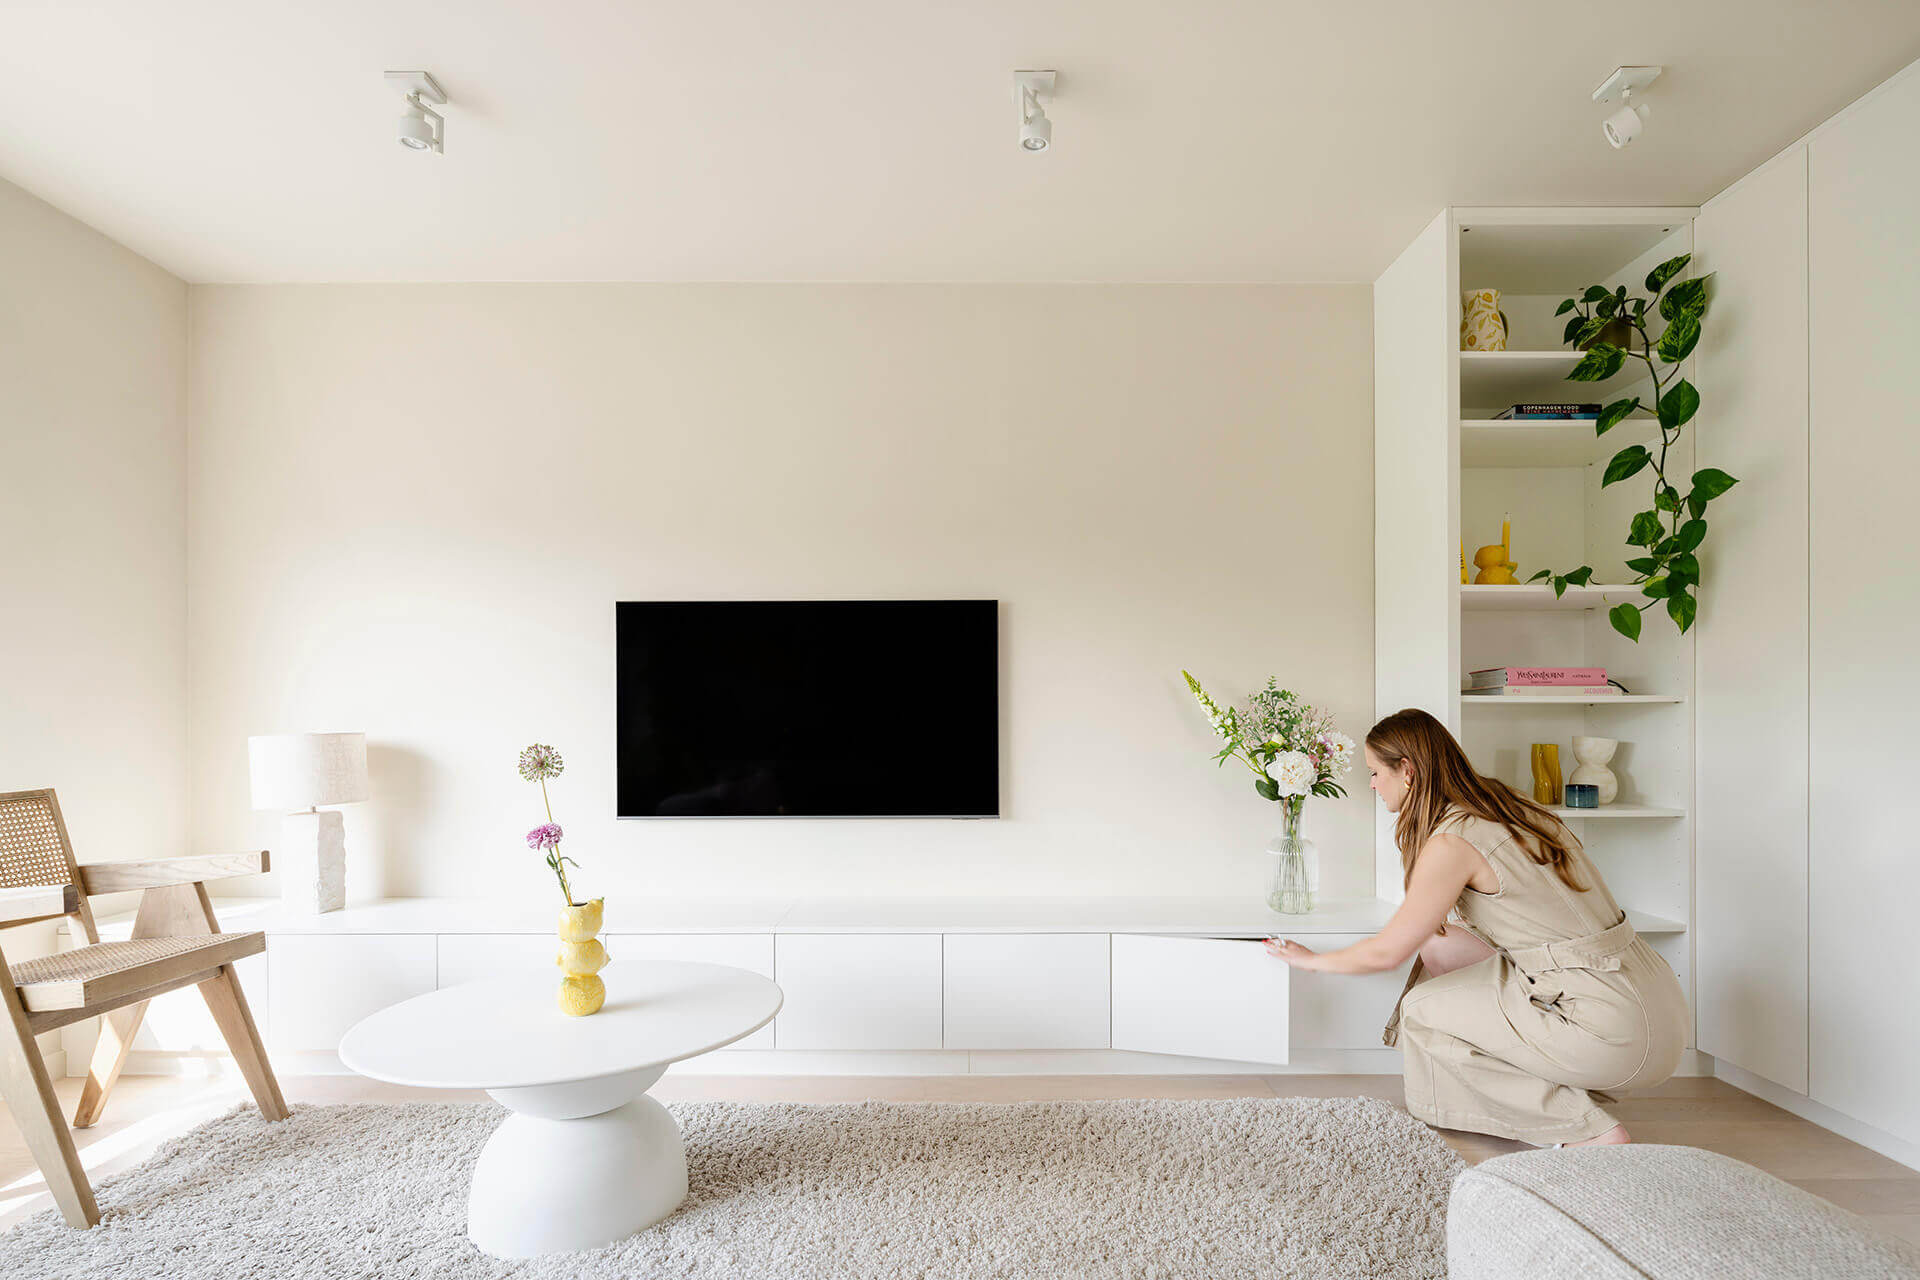 Custom white TV cabinet in the living room